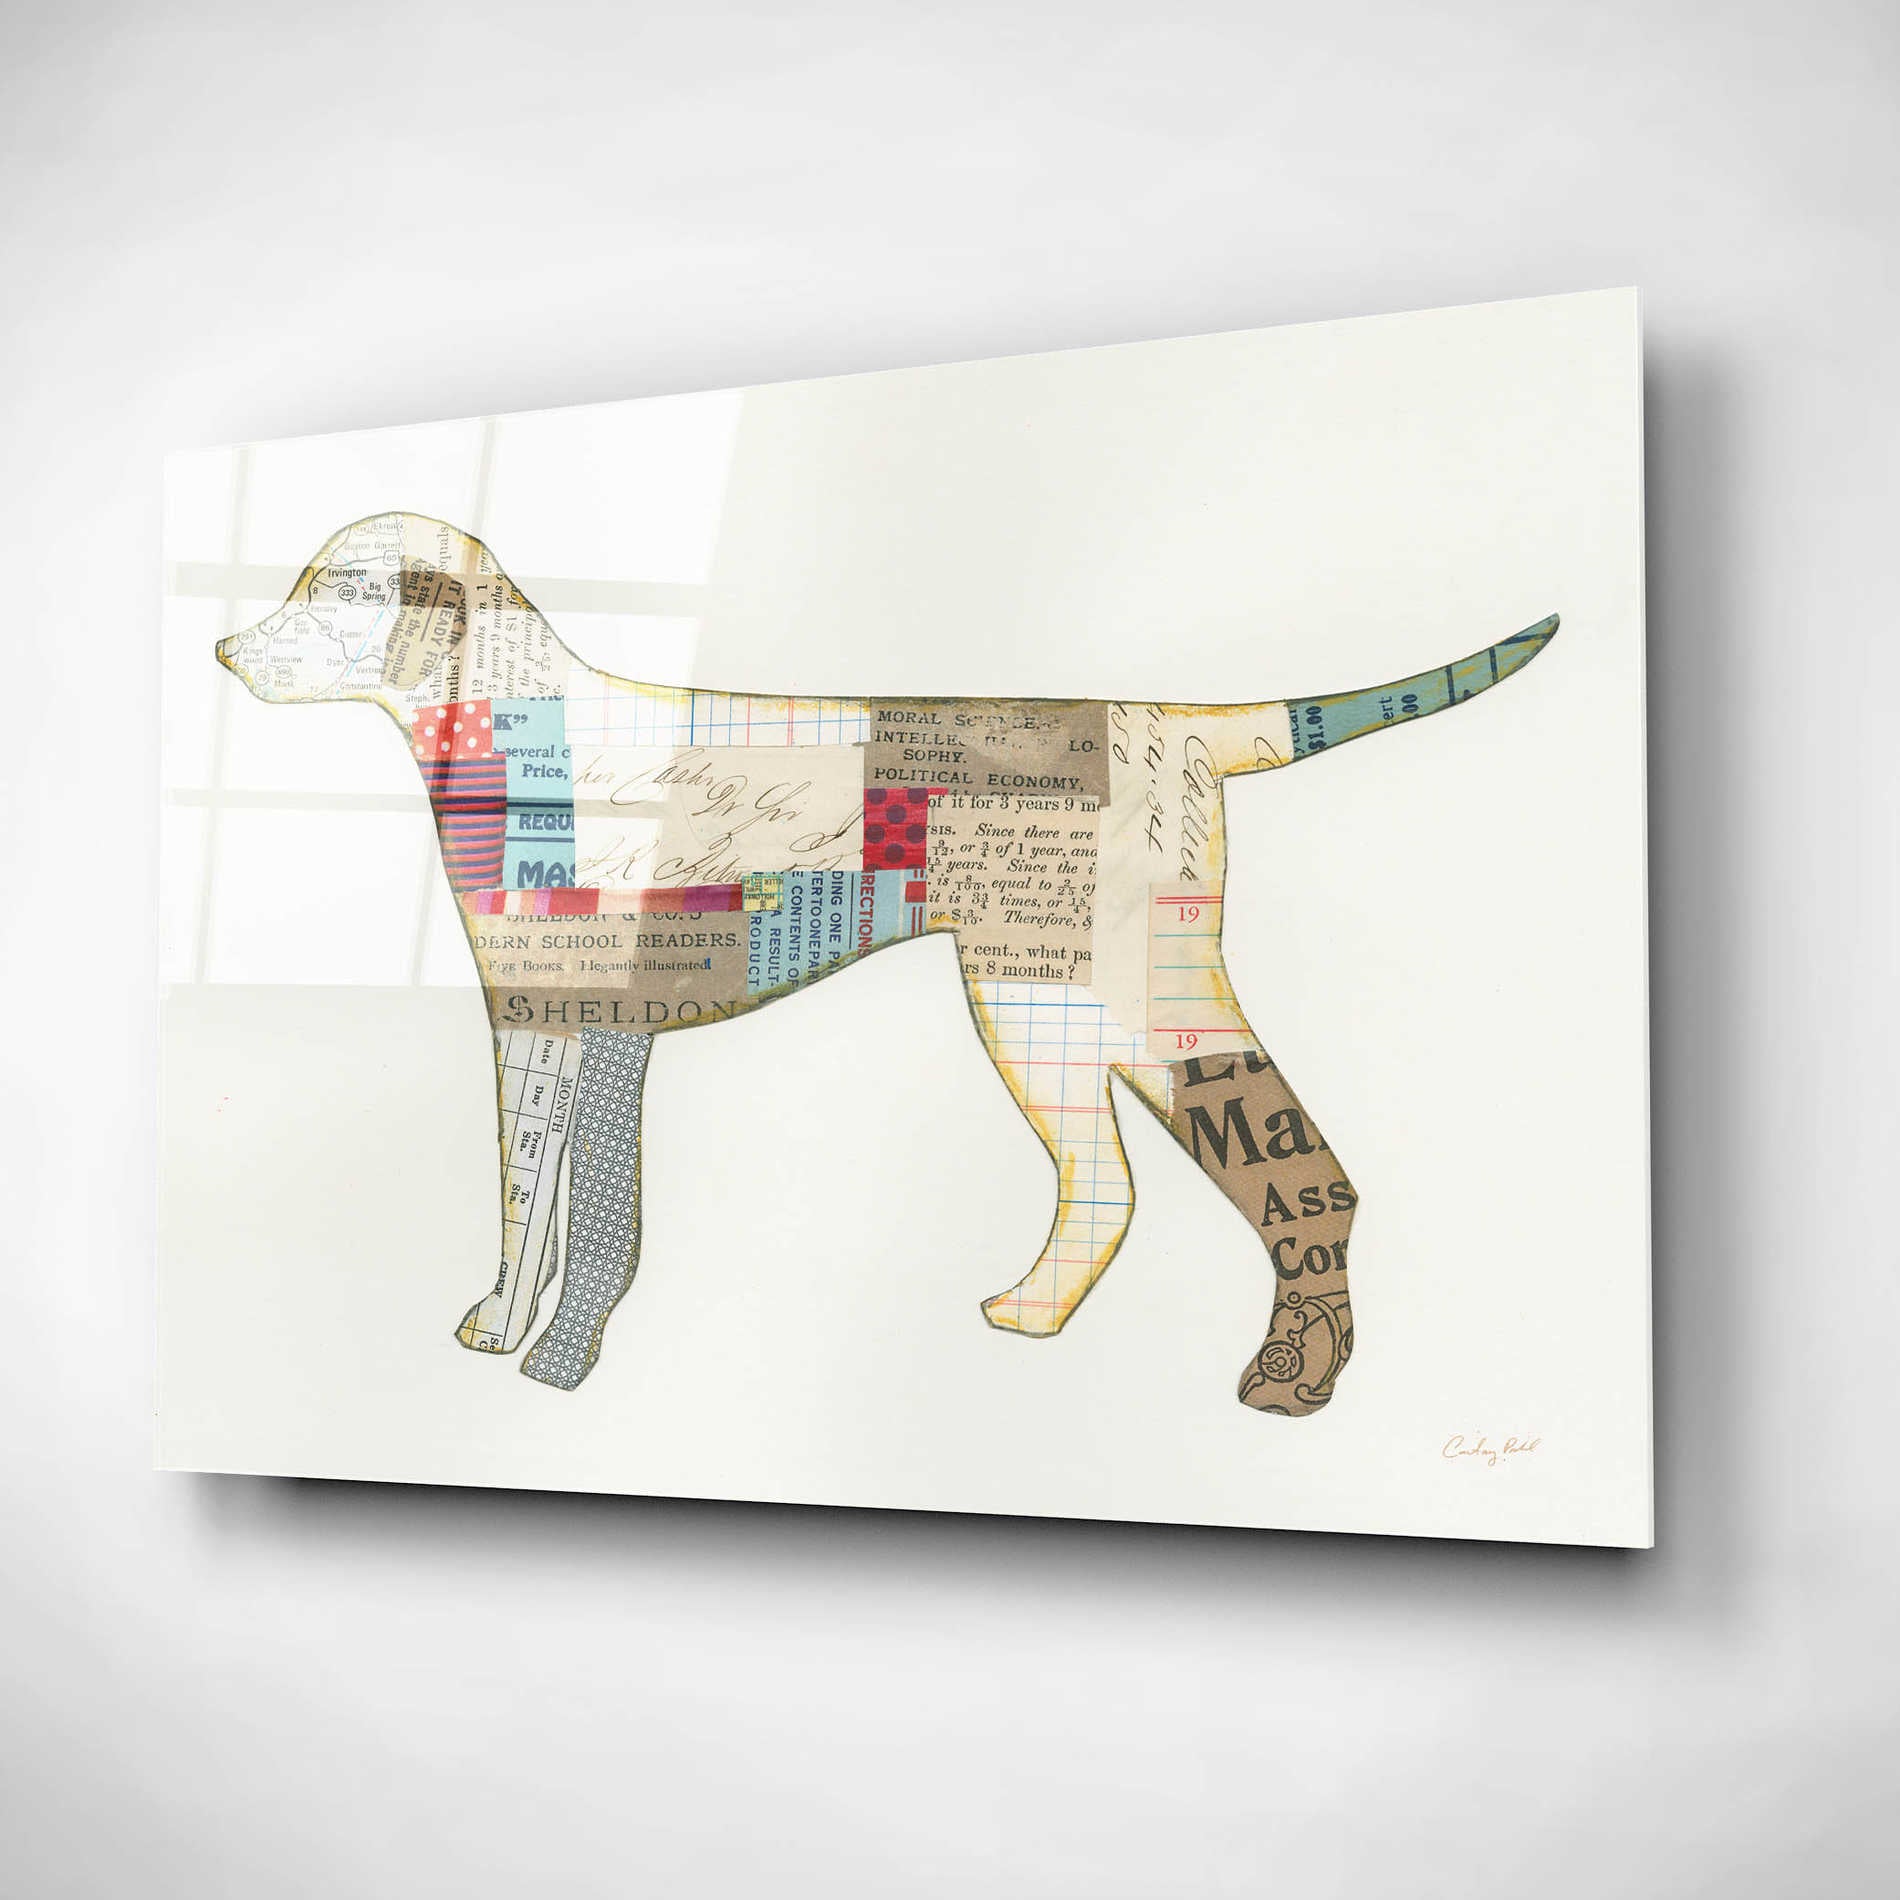 Epic Art 'Good Dog II' by Courtney Prahl, Acrylic Glass Wall Art,24x16